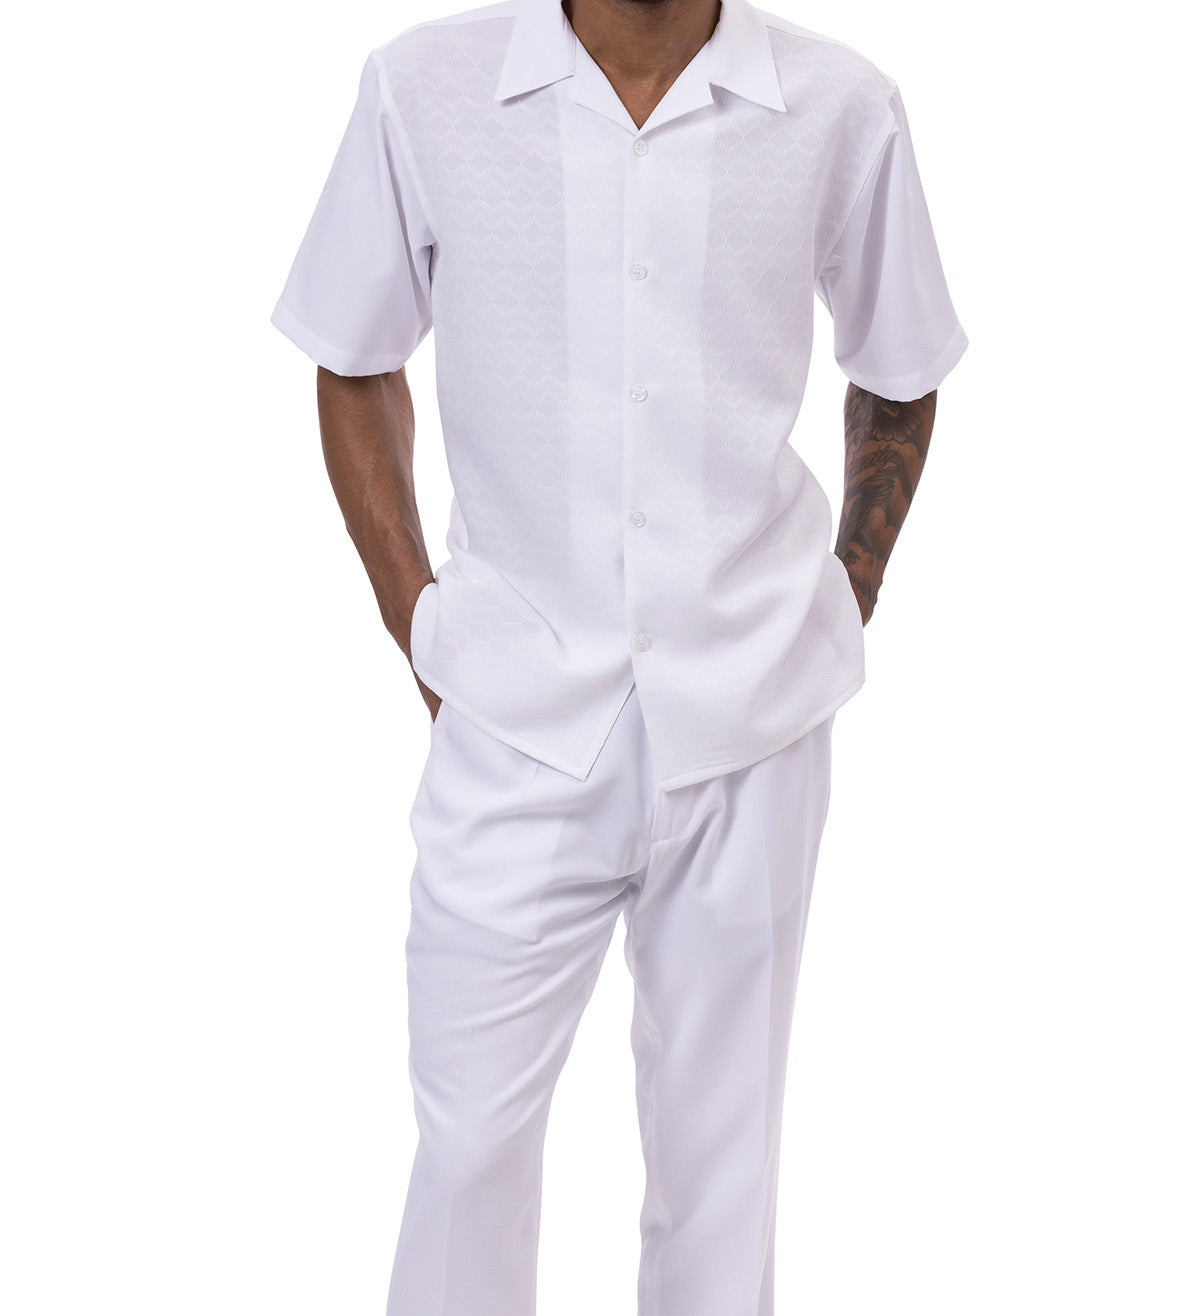 White Tone-on-tone Walking Suit 2 Piece Short Sleeve Set